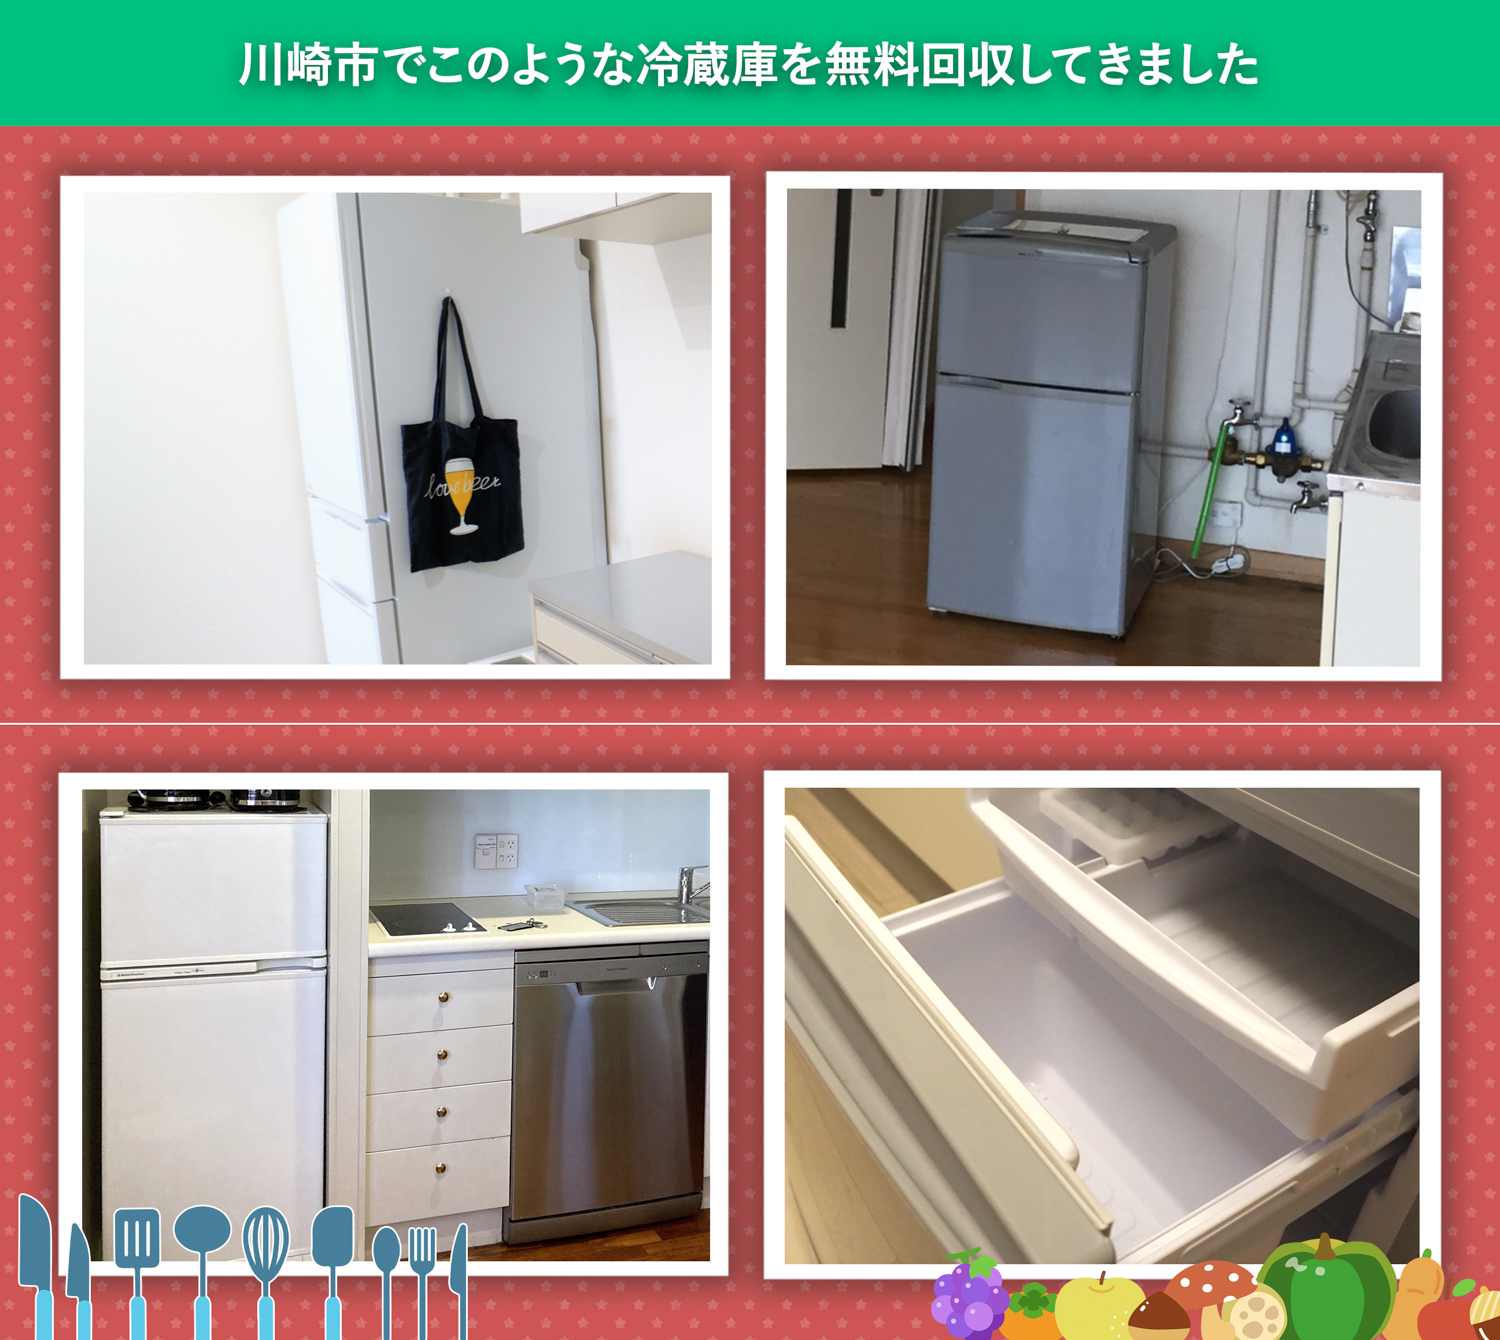 川崎市でこのような冷蔵庫を無料回収してきました。